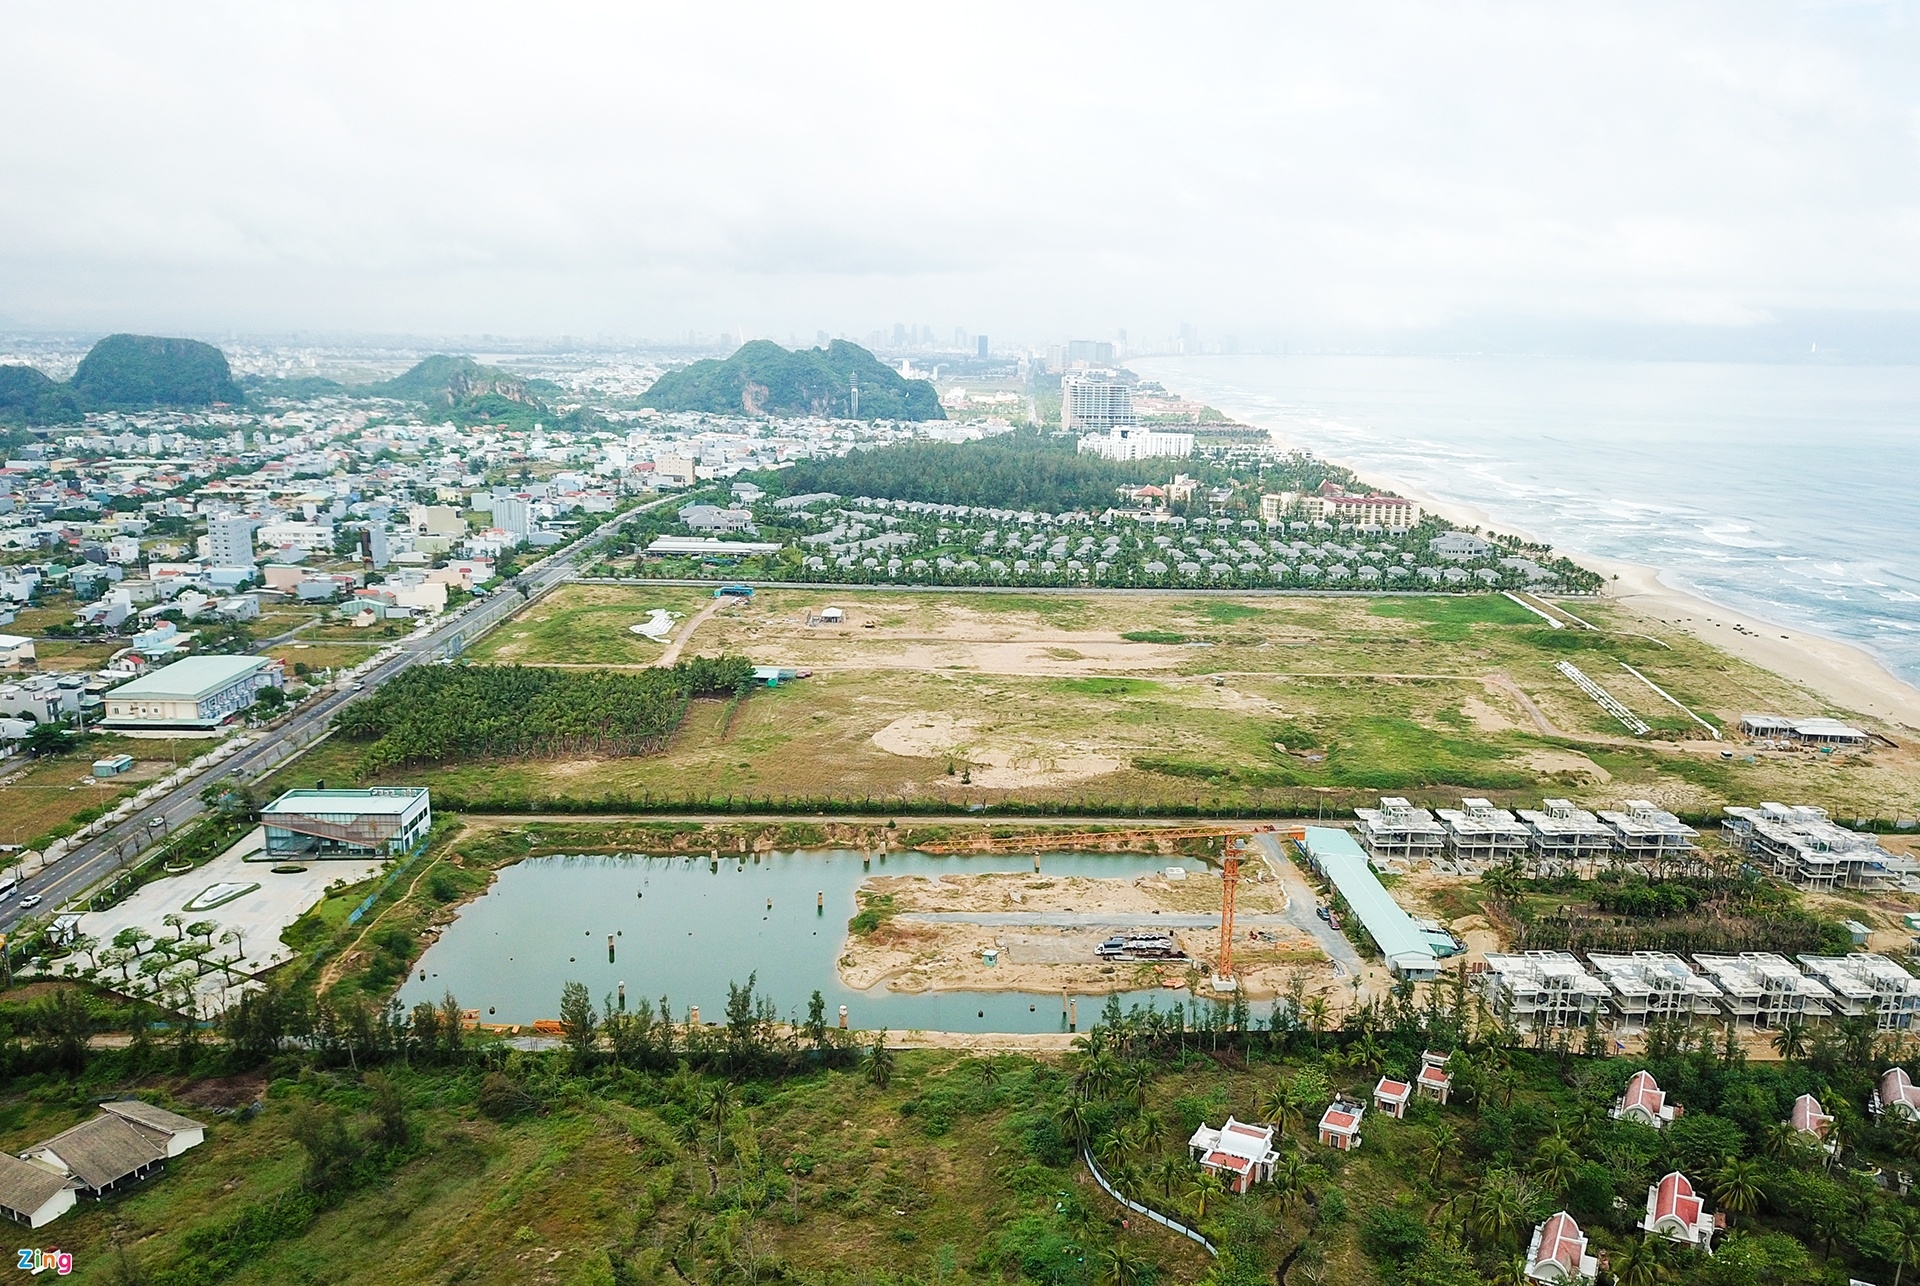 Hàng loạt biệt thự, resort bỏ hoang ở ven biển Đà Nẵng